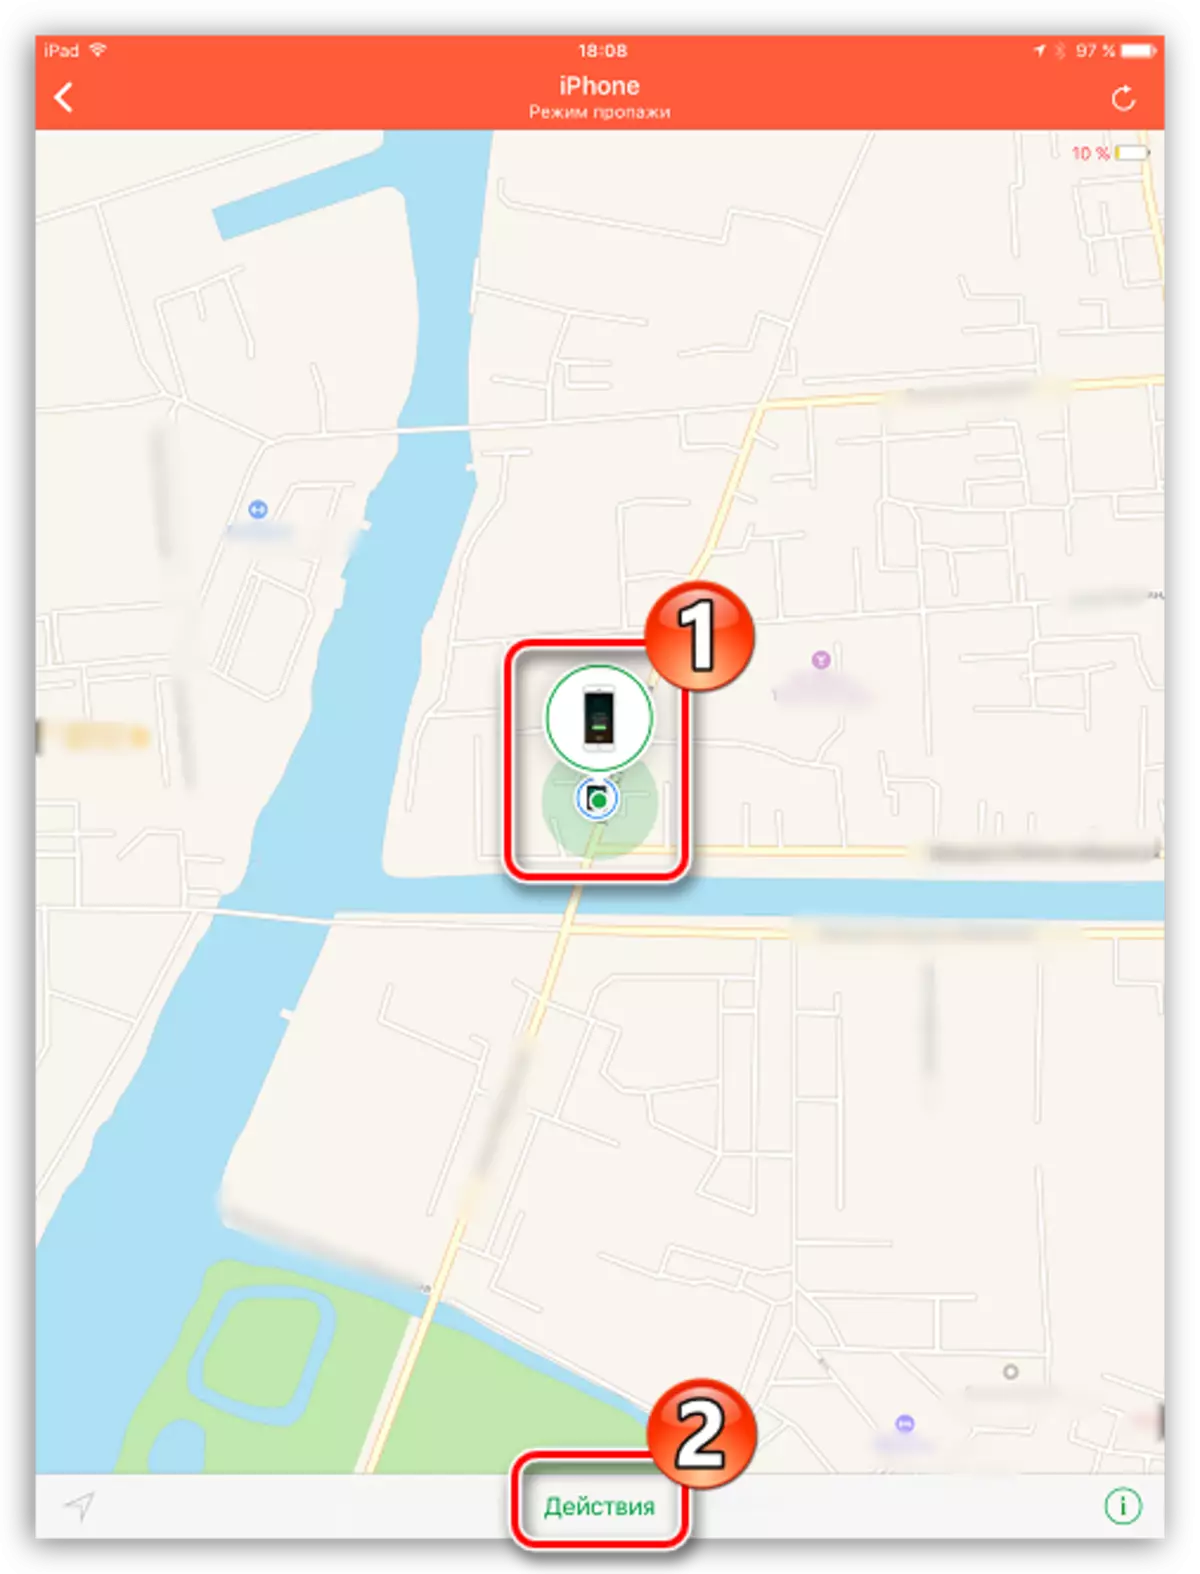 مشاهده موقعیت مکانی آی فون بر روی نقشه از طریق iPad